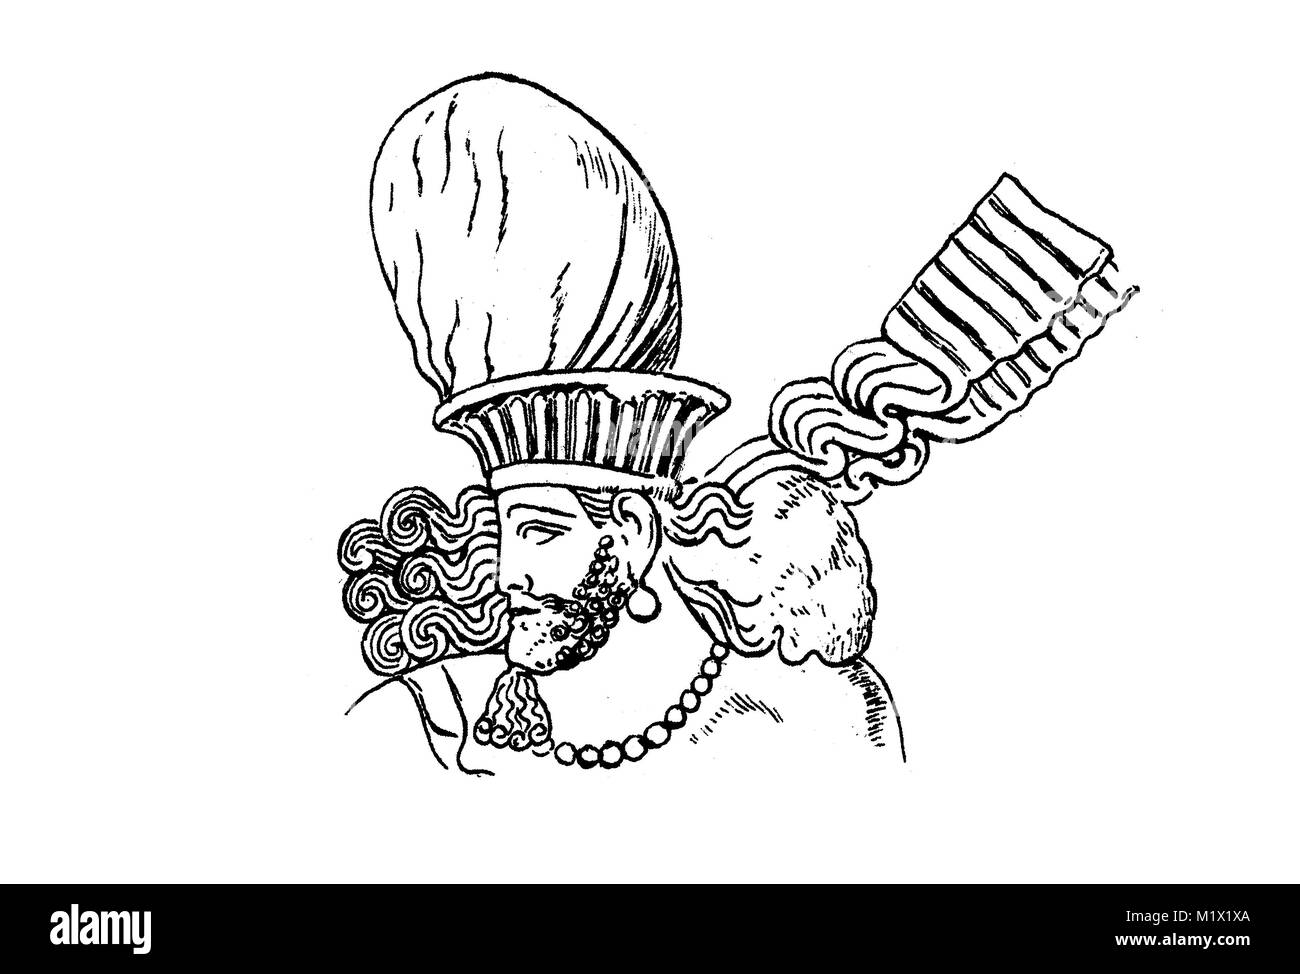 La mode, la coiffure, les vêtements en Perse durant la période d'Sassinid au début du Moyen-Âge, le Roi Narsahe ou Narsès, 293-302, annonce une amélioration numérique d'impression reproduction d'un original du 19ème siècle Banque D'Images